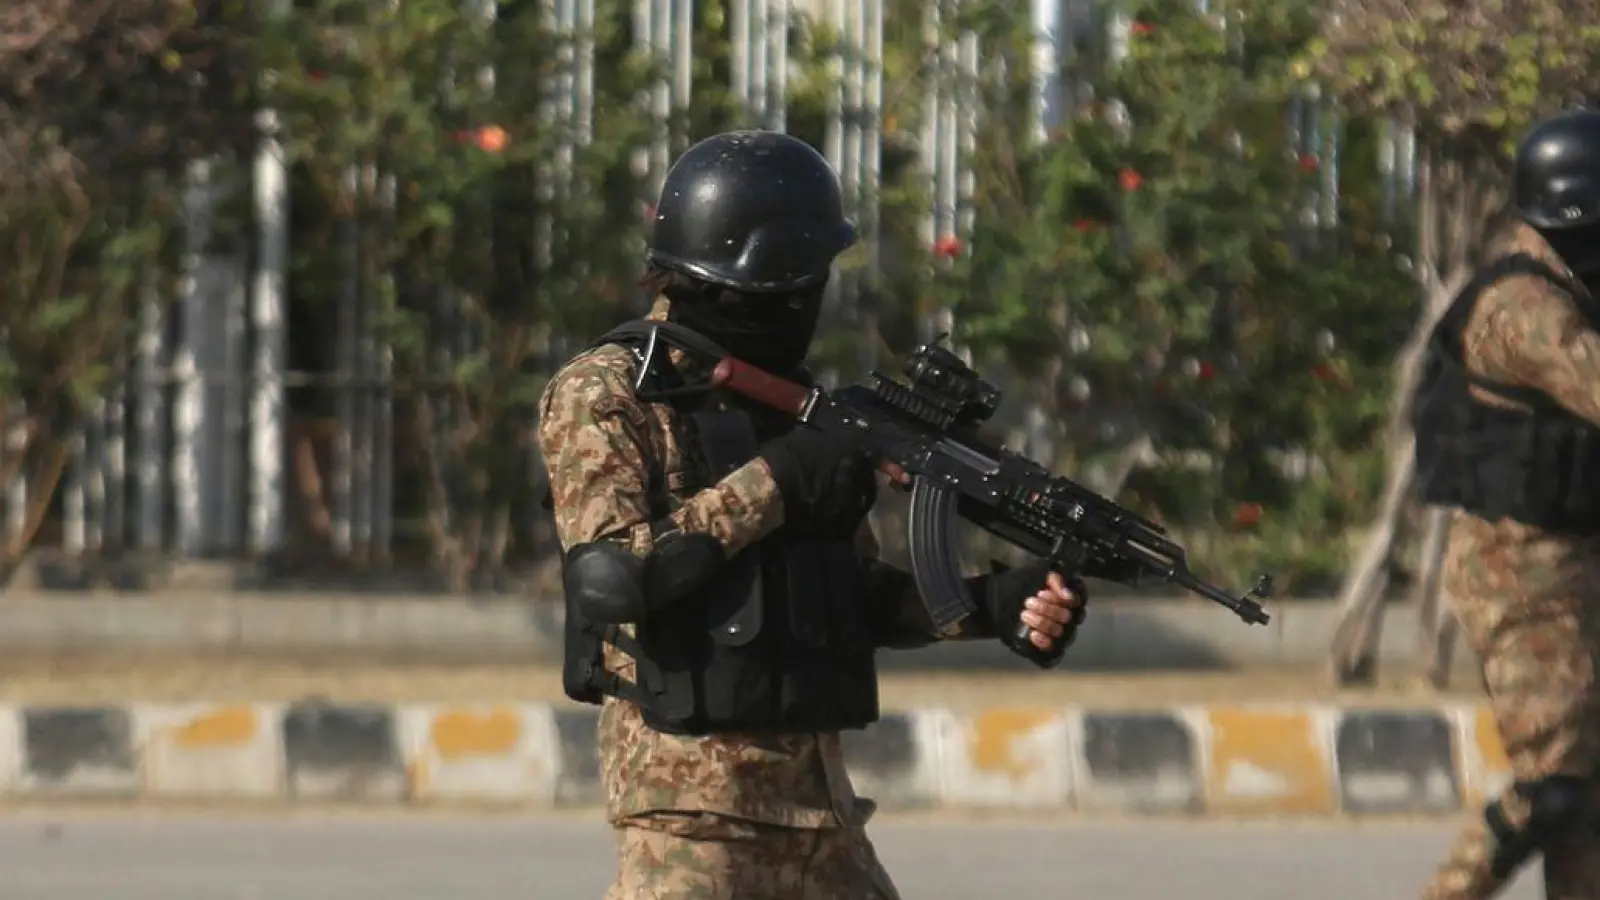 Pakistanische Polizisten patrouillieren, um die Sicherheit zu gewährleisten (Symbolbild). (Foto: Fareed Khan/AP/dpa)